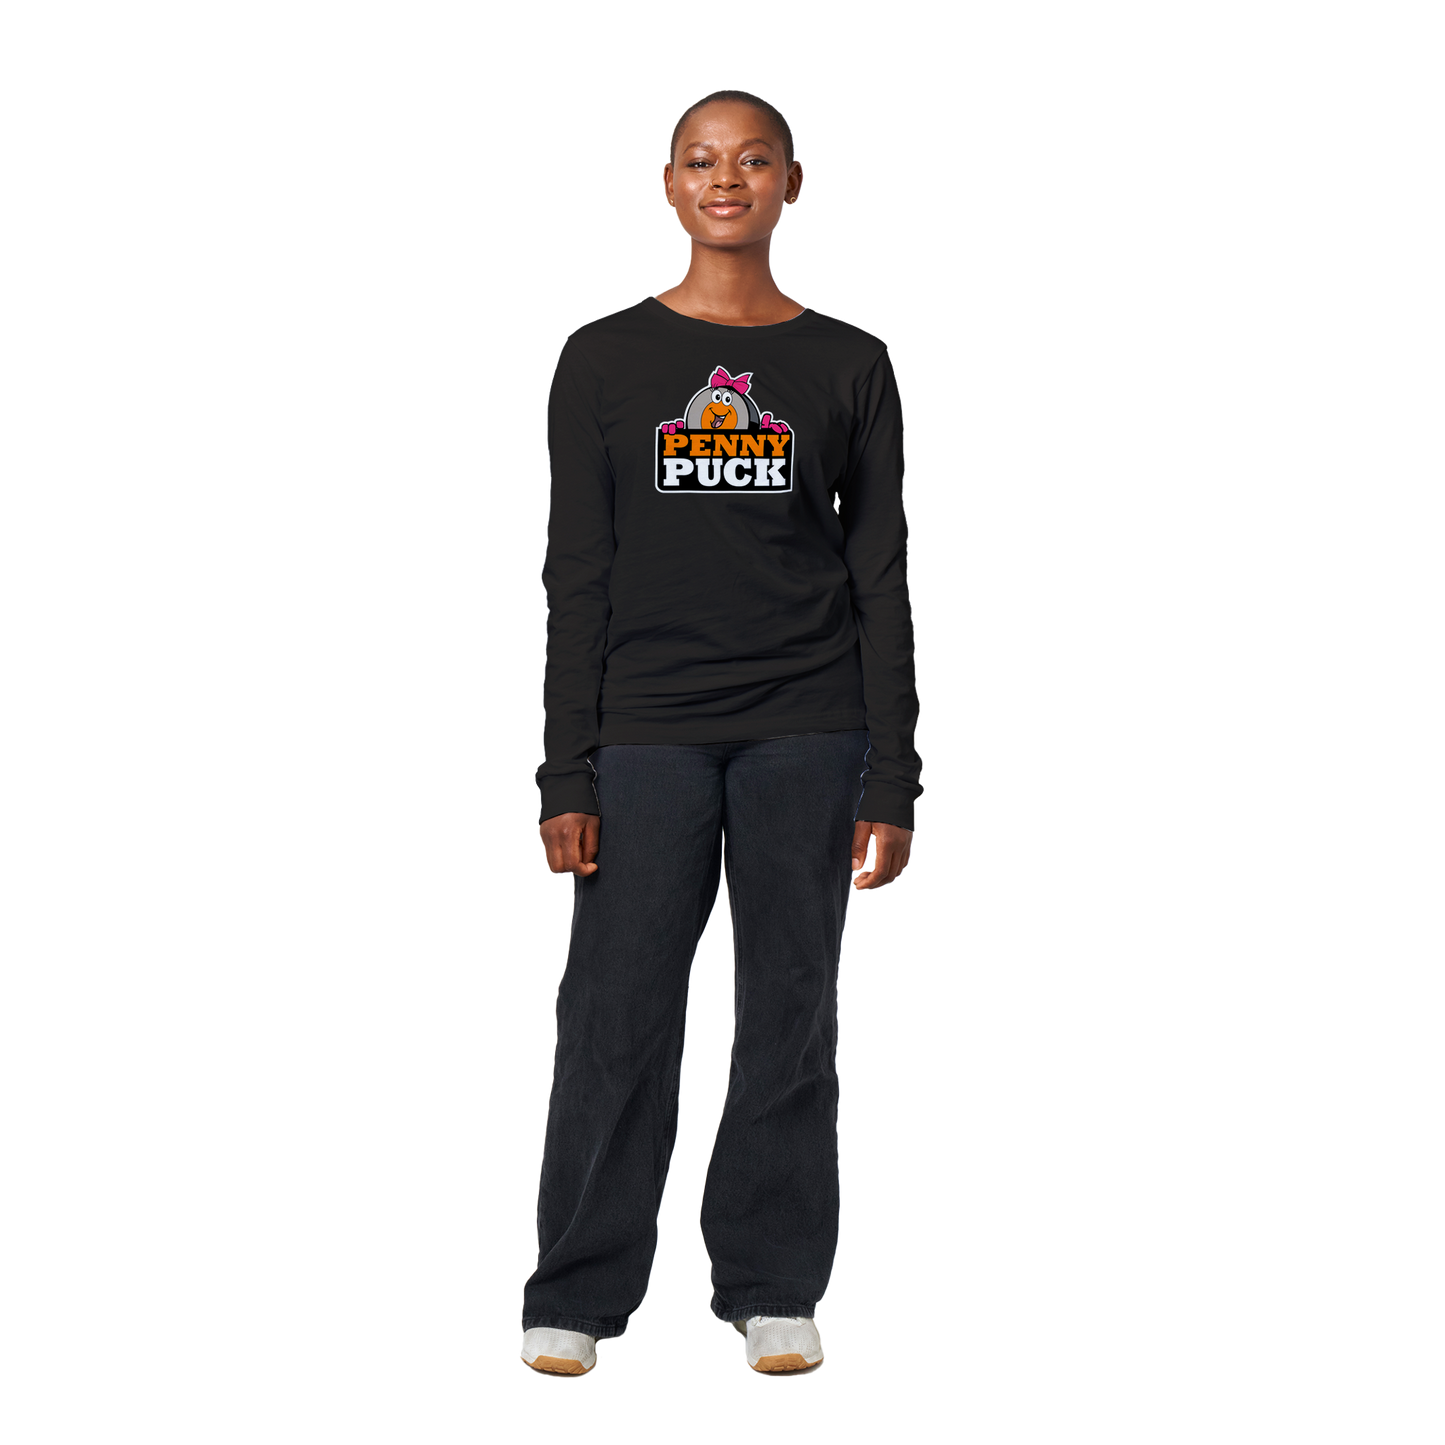 Penny Puck Peek Premium Mens Longsleeve T-shirt